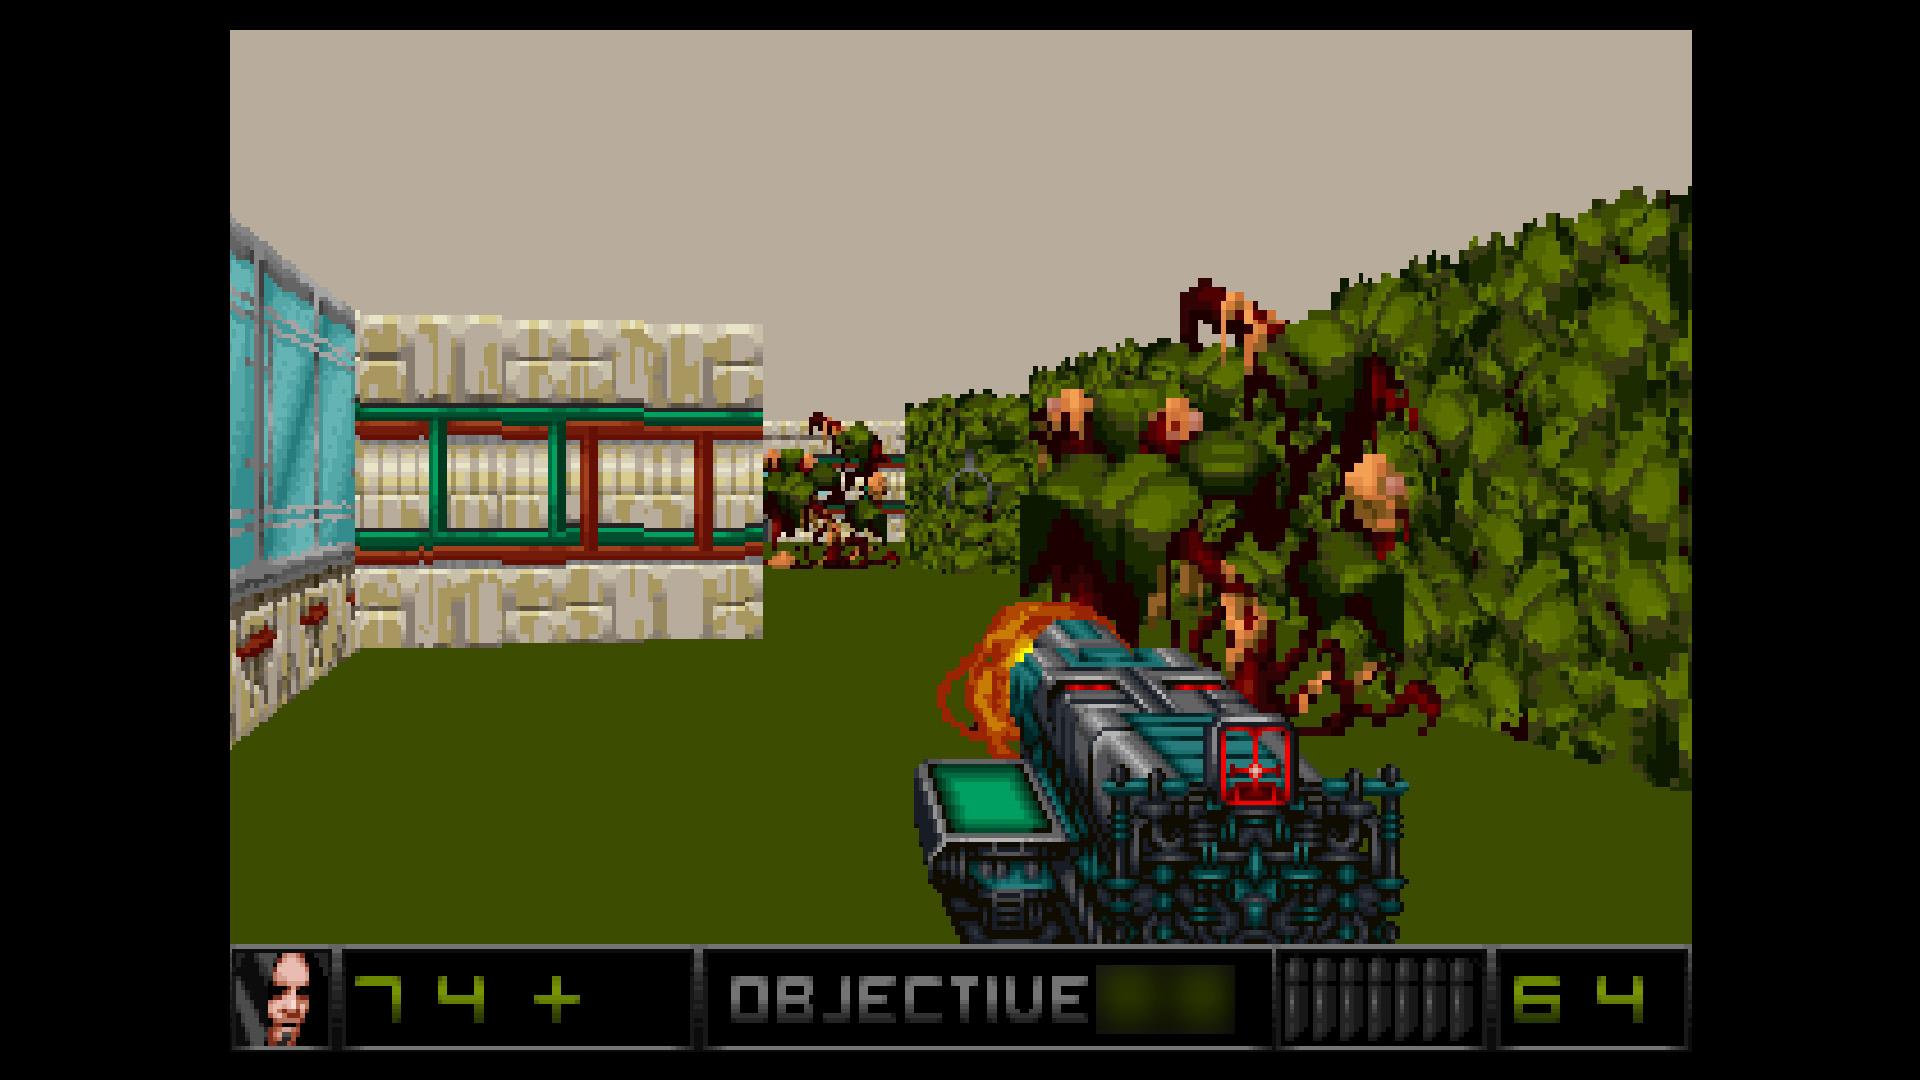 Screenshot №2 from game Merger 3D